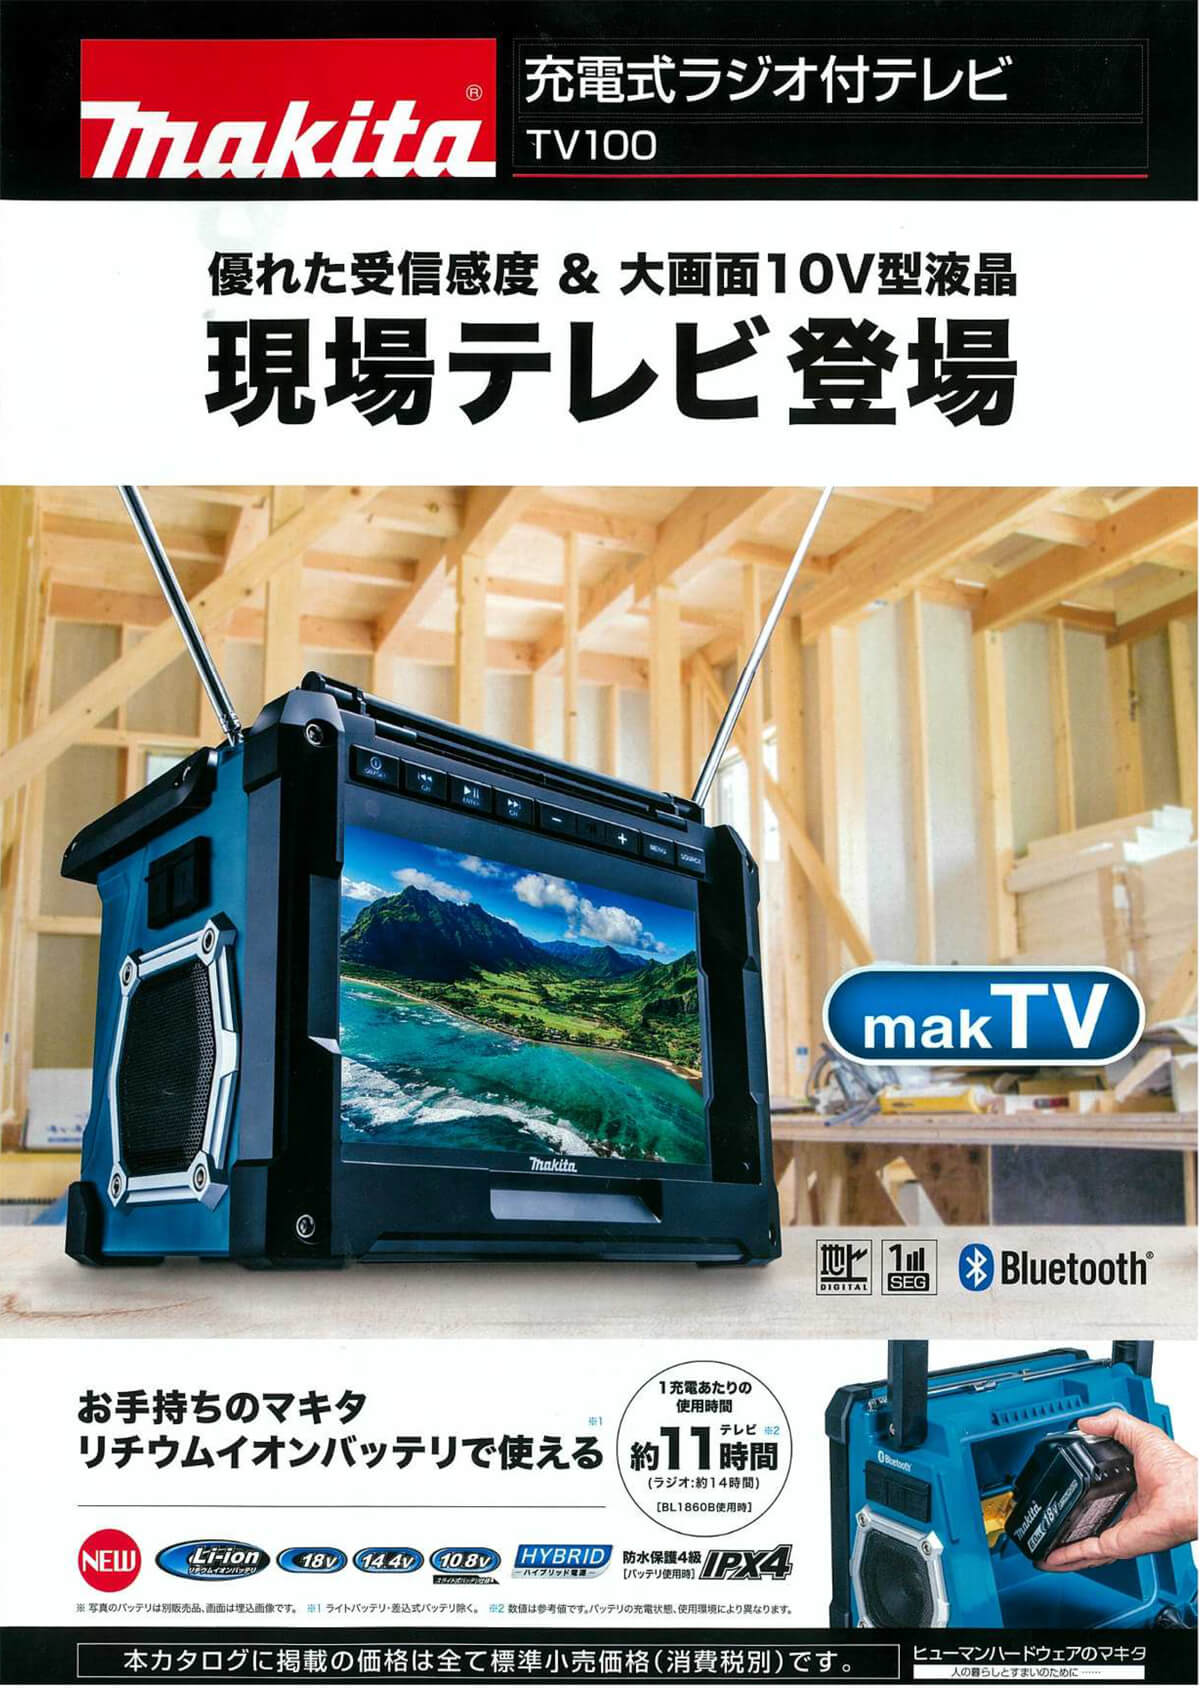 ☆美品☆makita マキタ 充電式ラジオ付きテレビ TV100 現場用ラジオ付きテレビ 62493